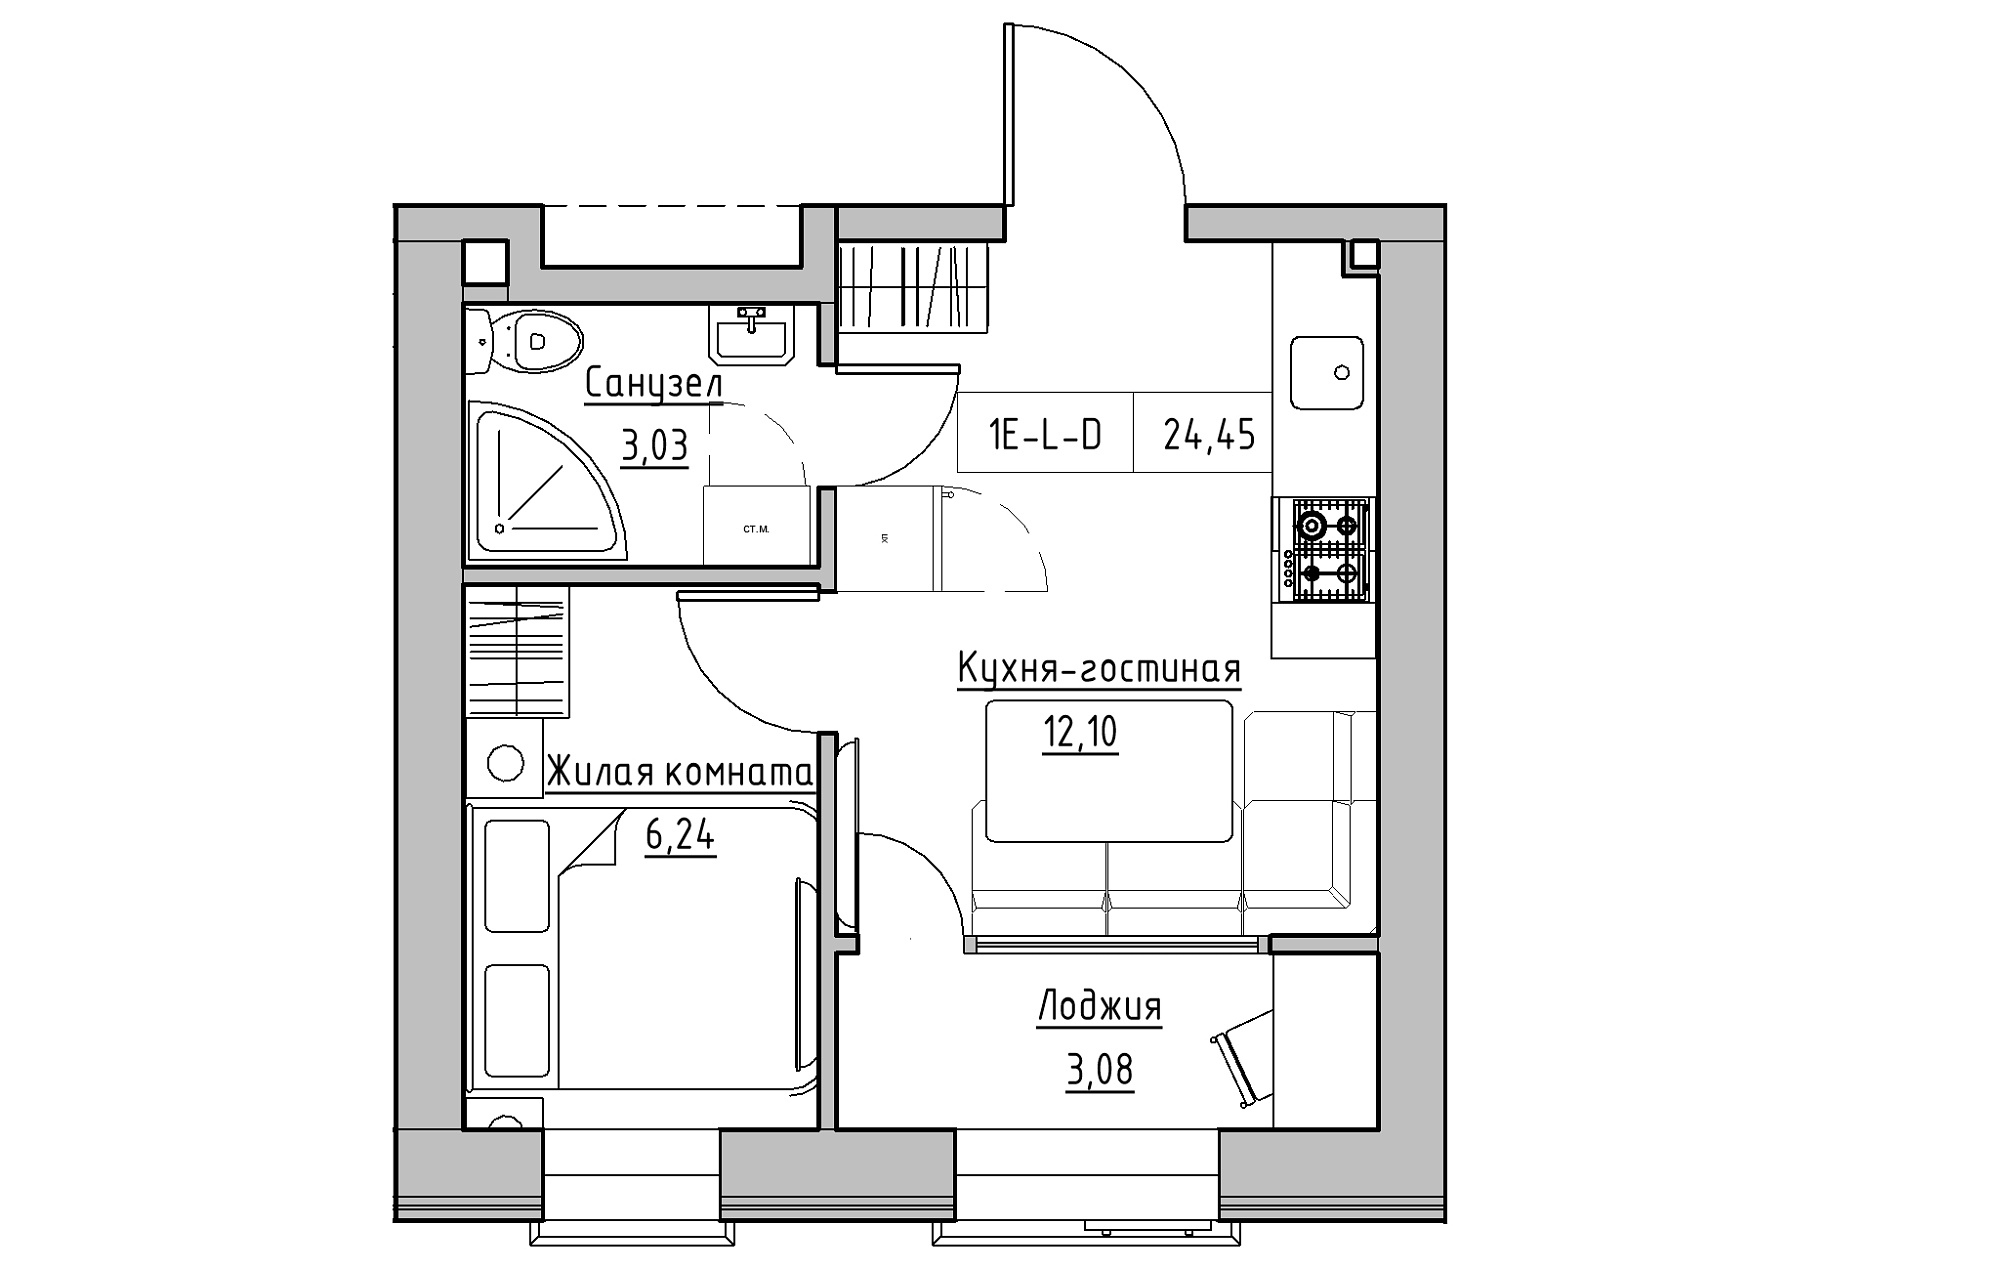 Планировка 1-к квартира площей 24.45м2, KS-018-02/0002.